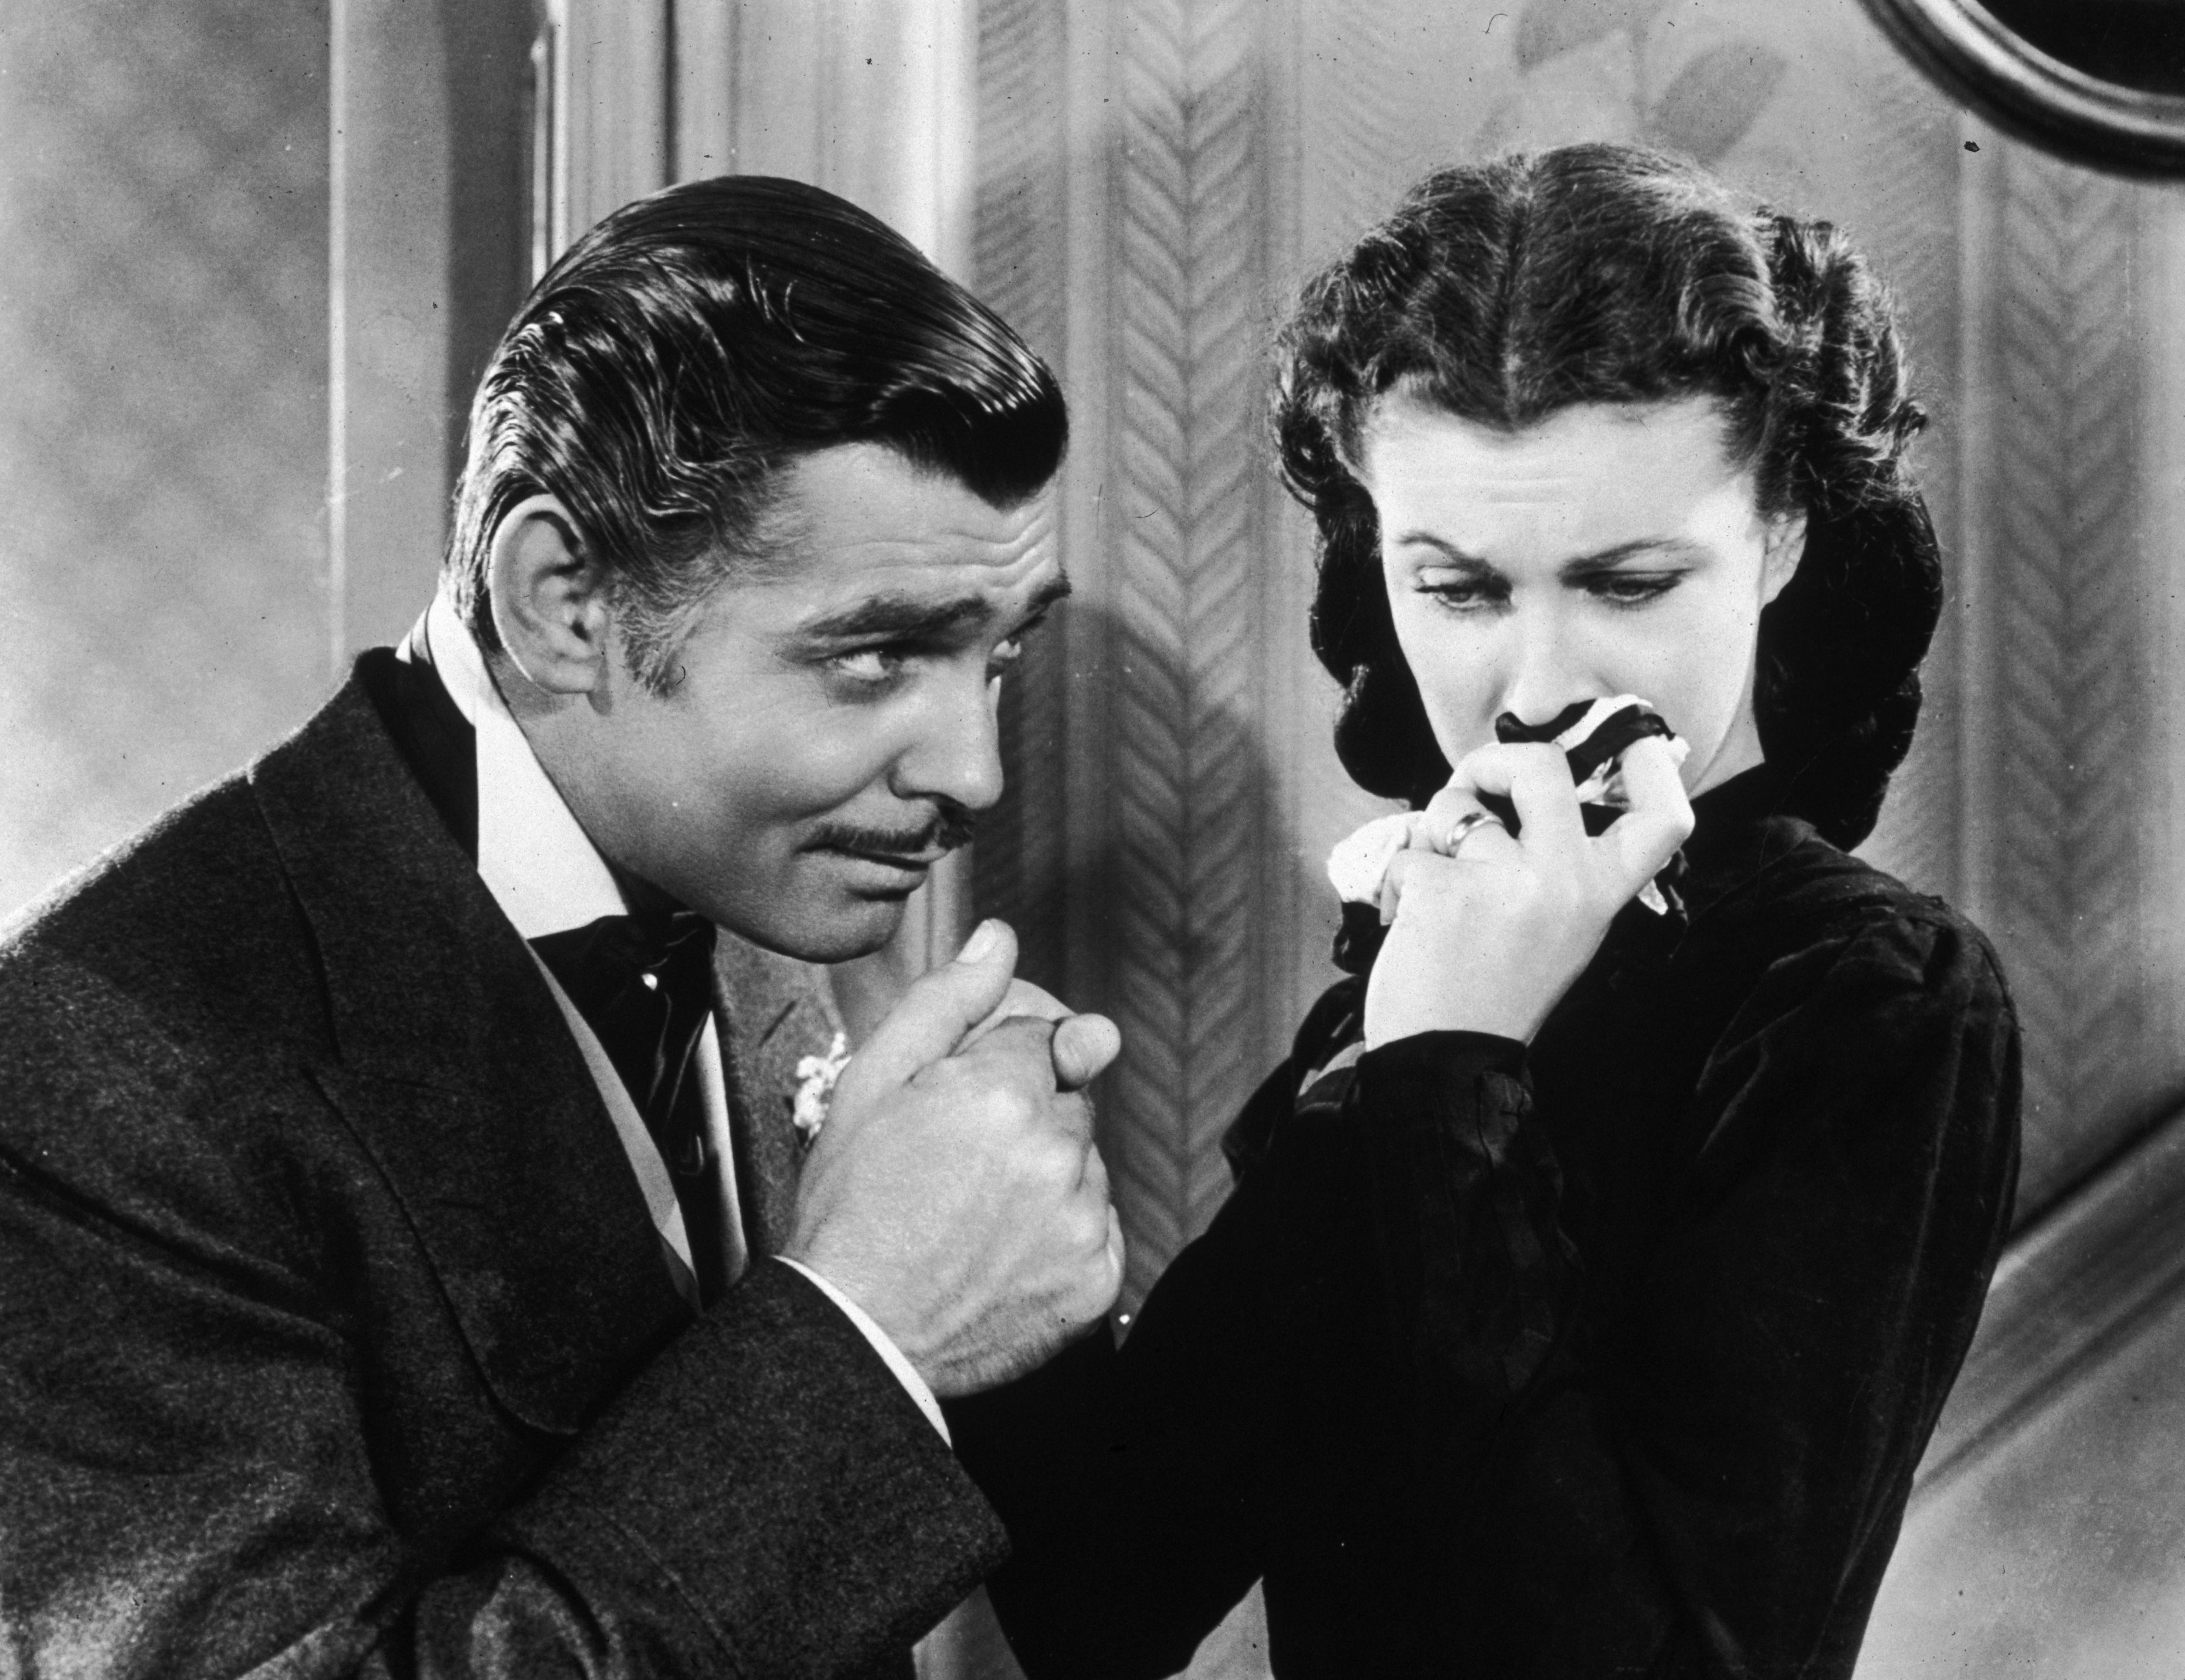 Clark Gable als Rhett Butler mit Vivien Leigh als Scarlett O'Hara in 'Vom Winde verweht' | Quelle: Getty Images